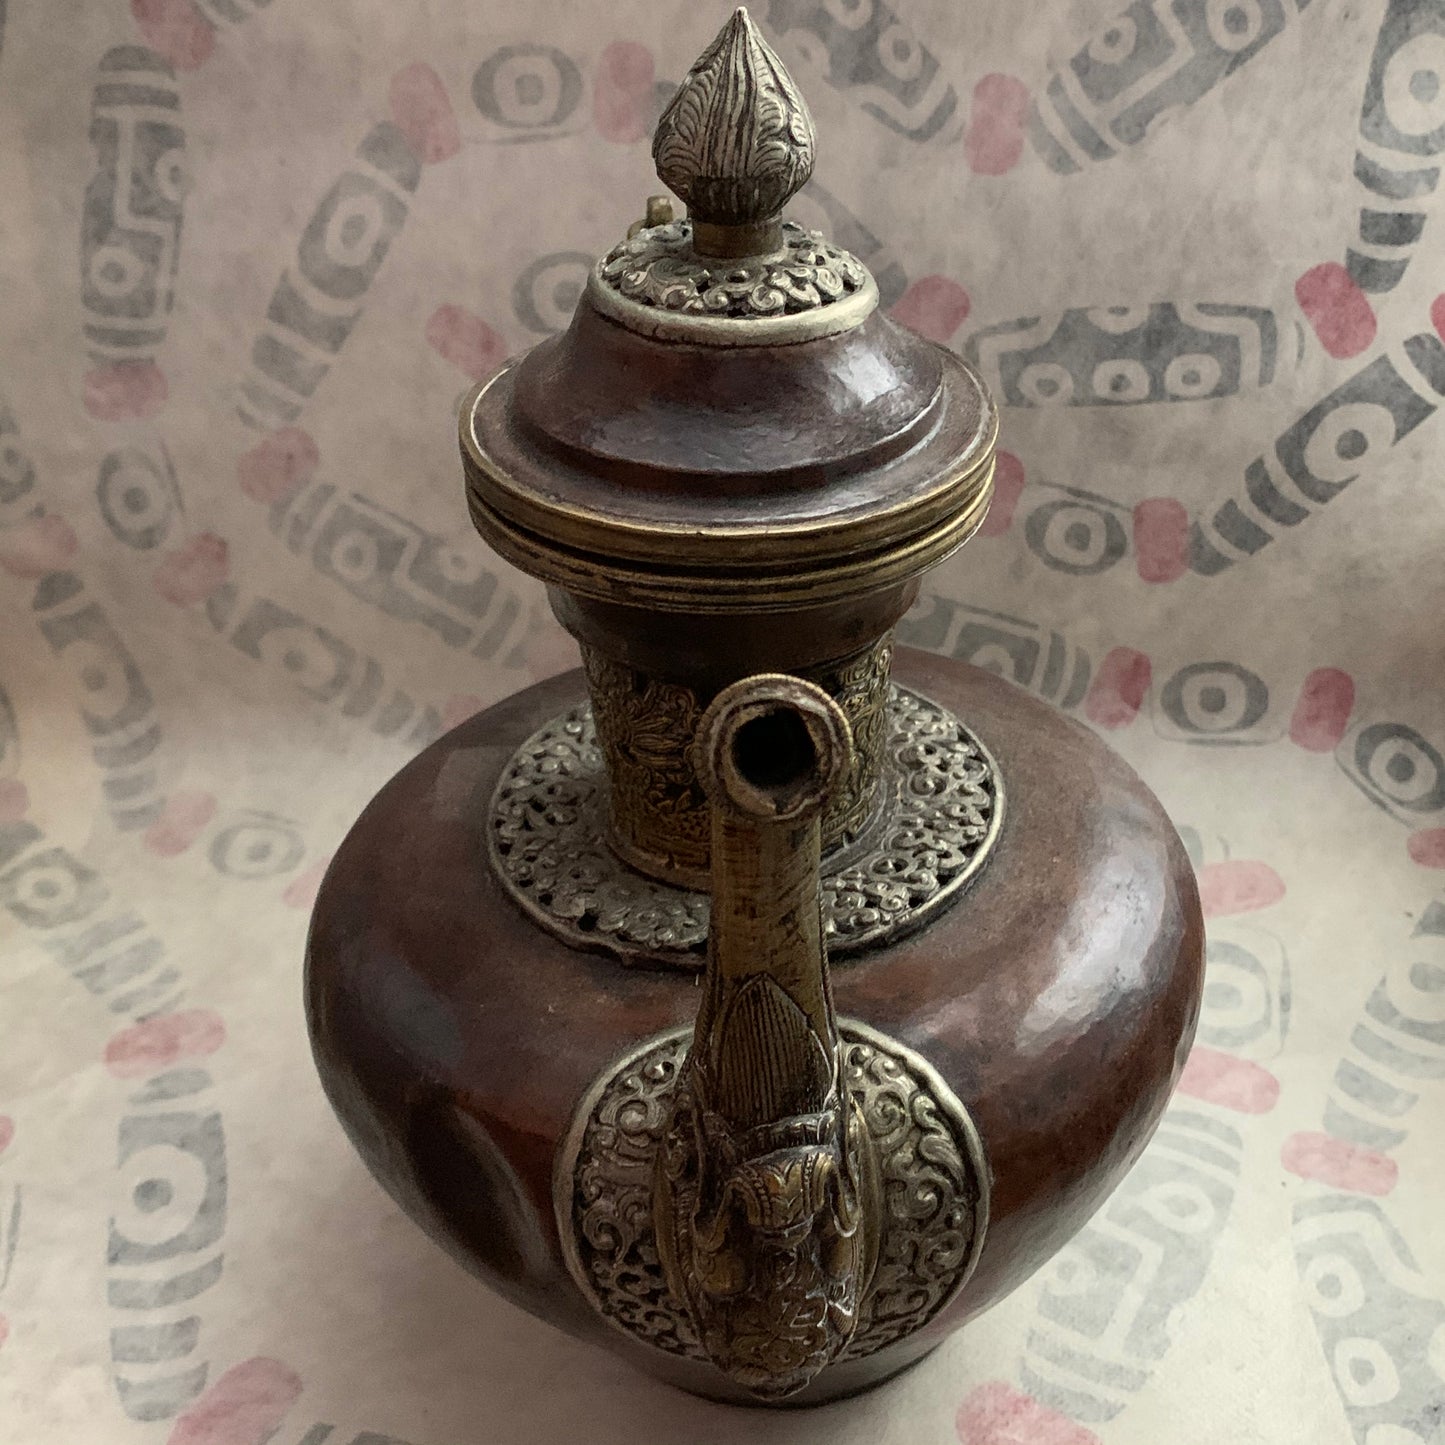 An antique Tibetan bronze teapot